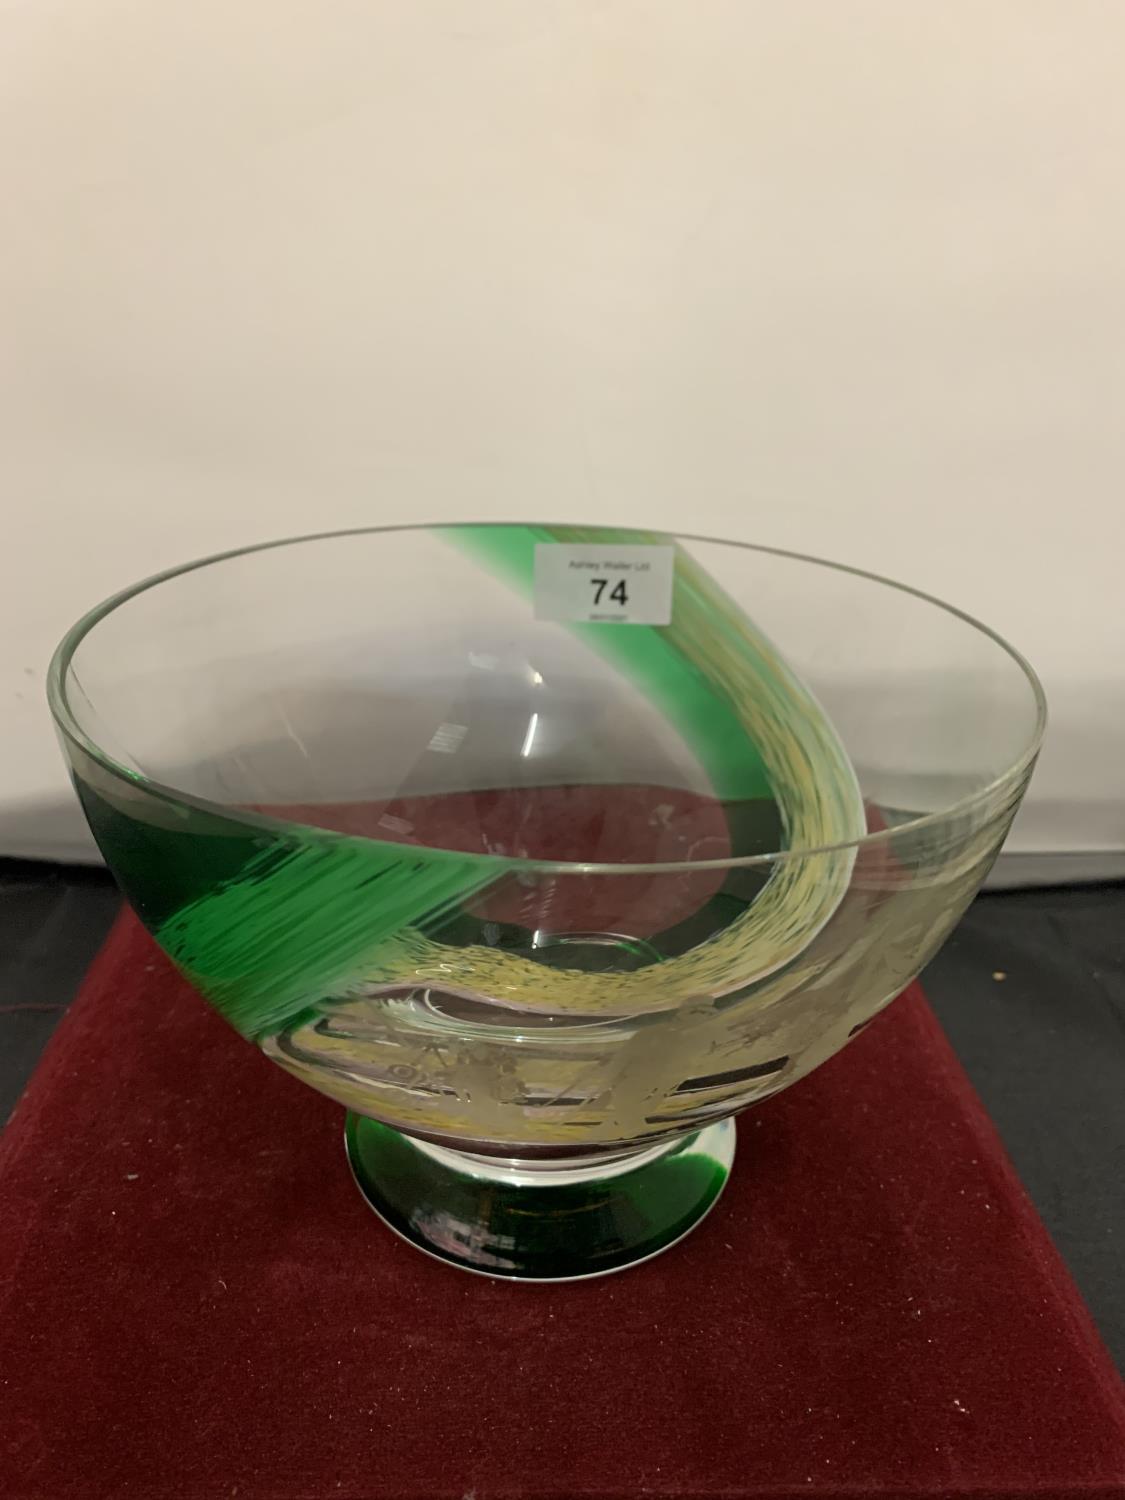 A GREEN GLASS BOWL DEPICTING A GOLF MATCH